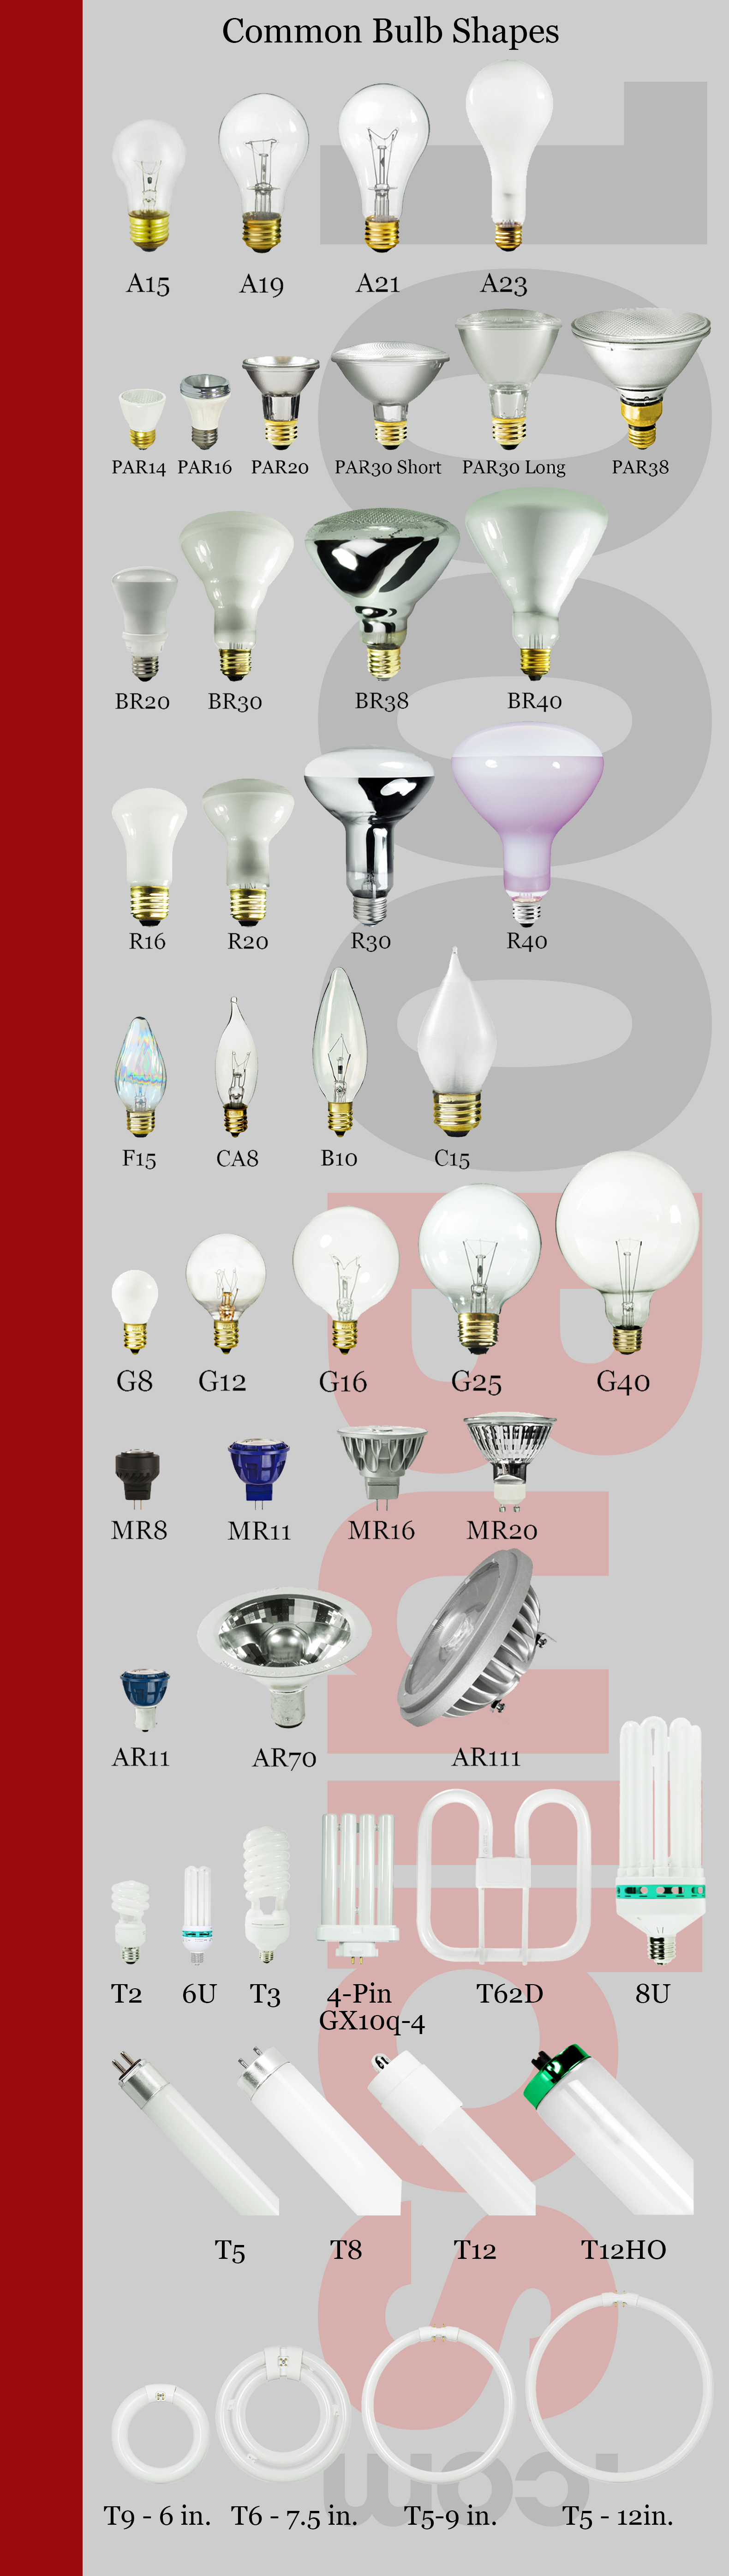 diagrama de formas de bombillas.png